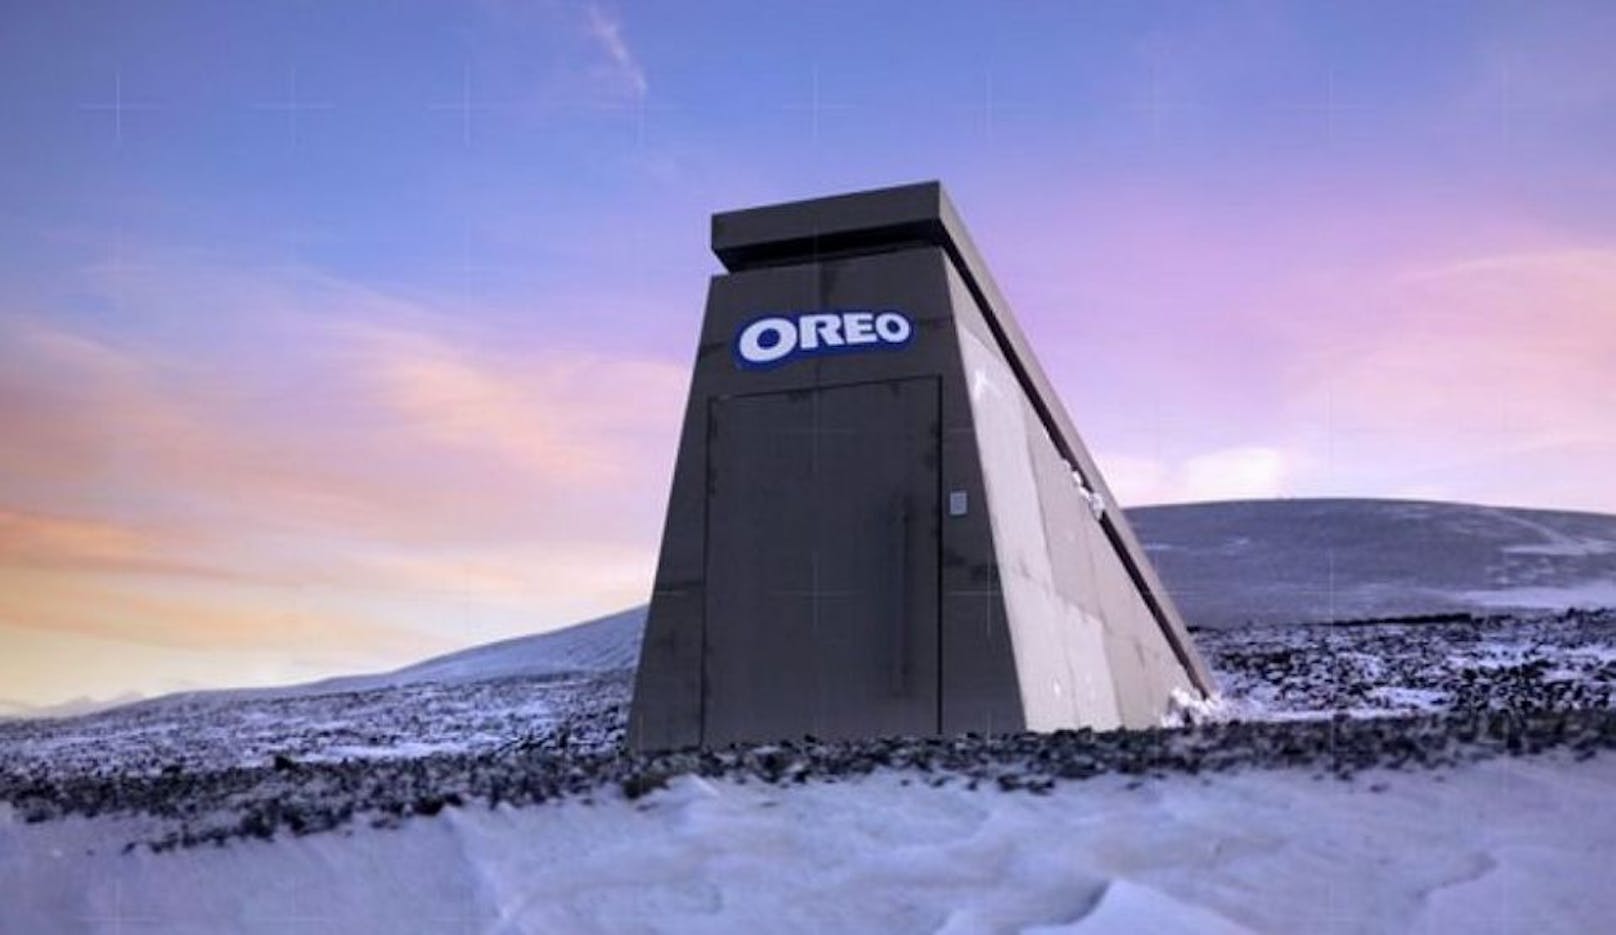 Der Oreo-Bunker in Norwegen beheimatet ein wichtiges Vermächtnis für die Kultur der Menschheit. Nachfolgende Generationen aus der Zukunft werden uns dafür dankbar sein.<br>